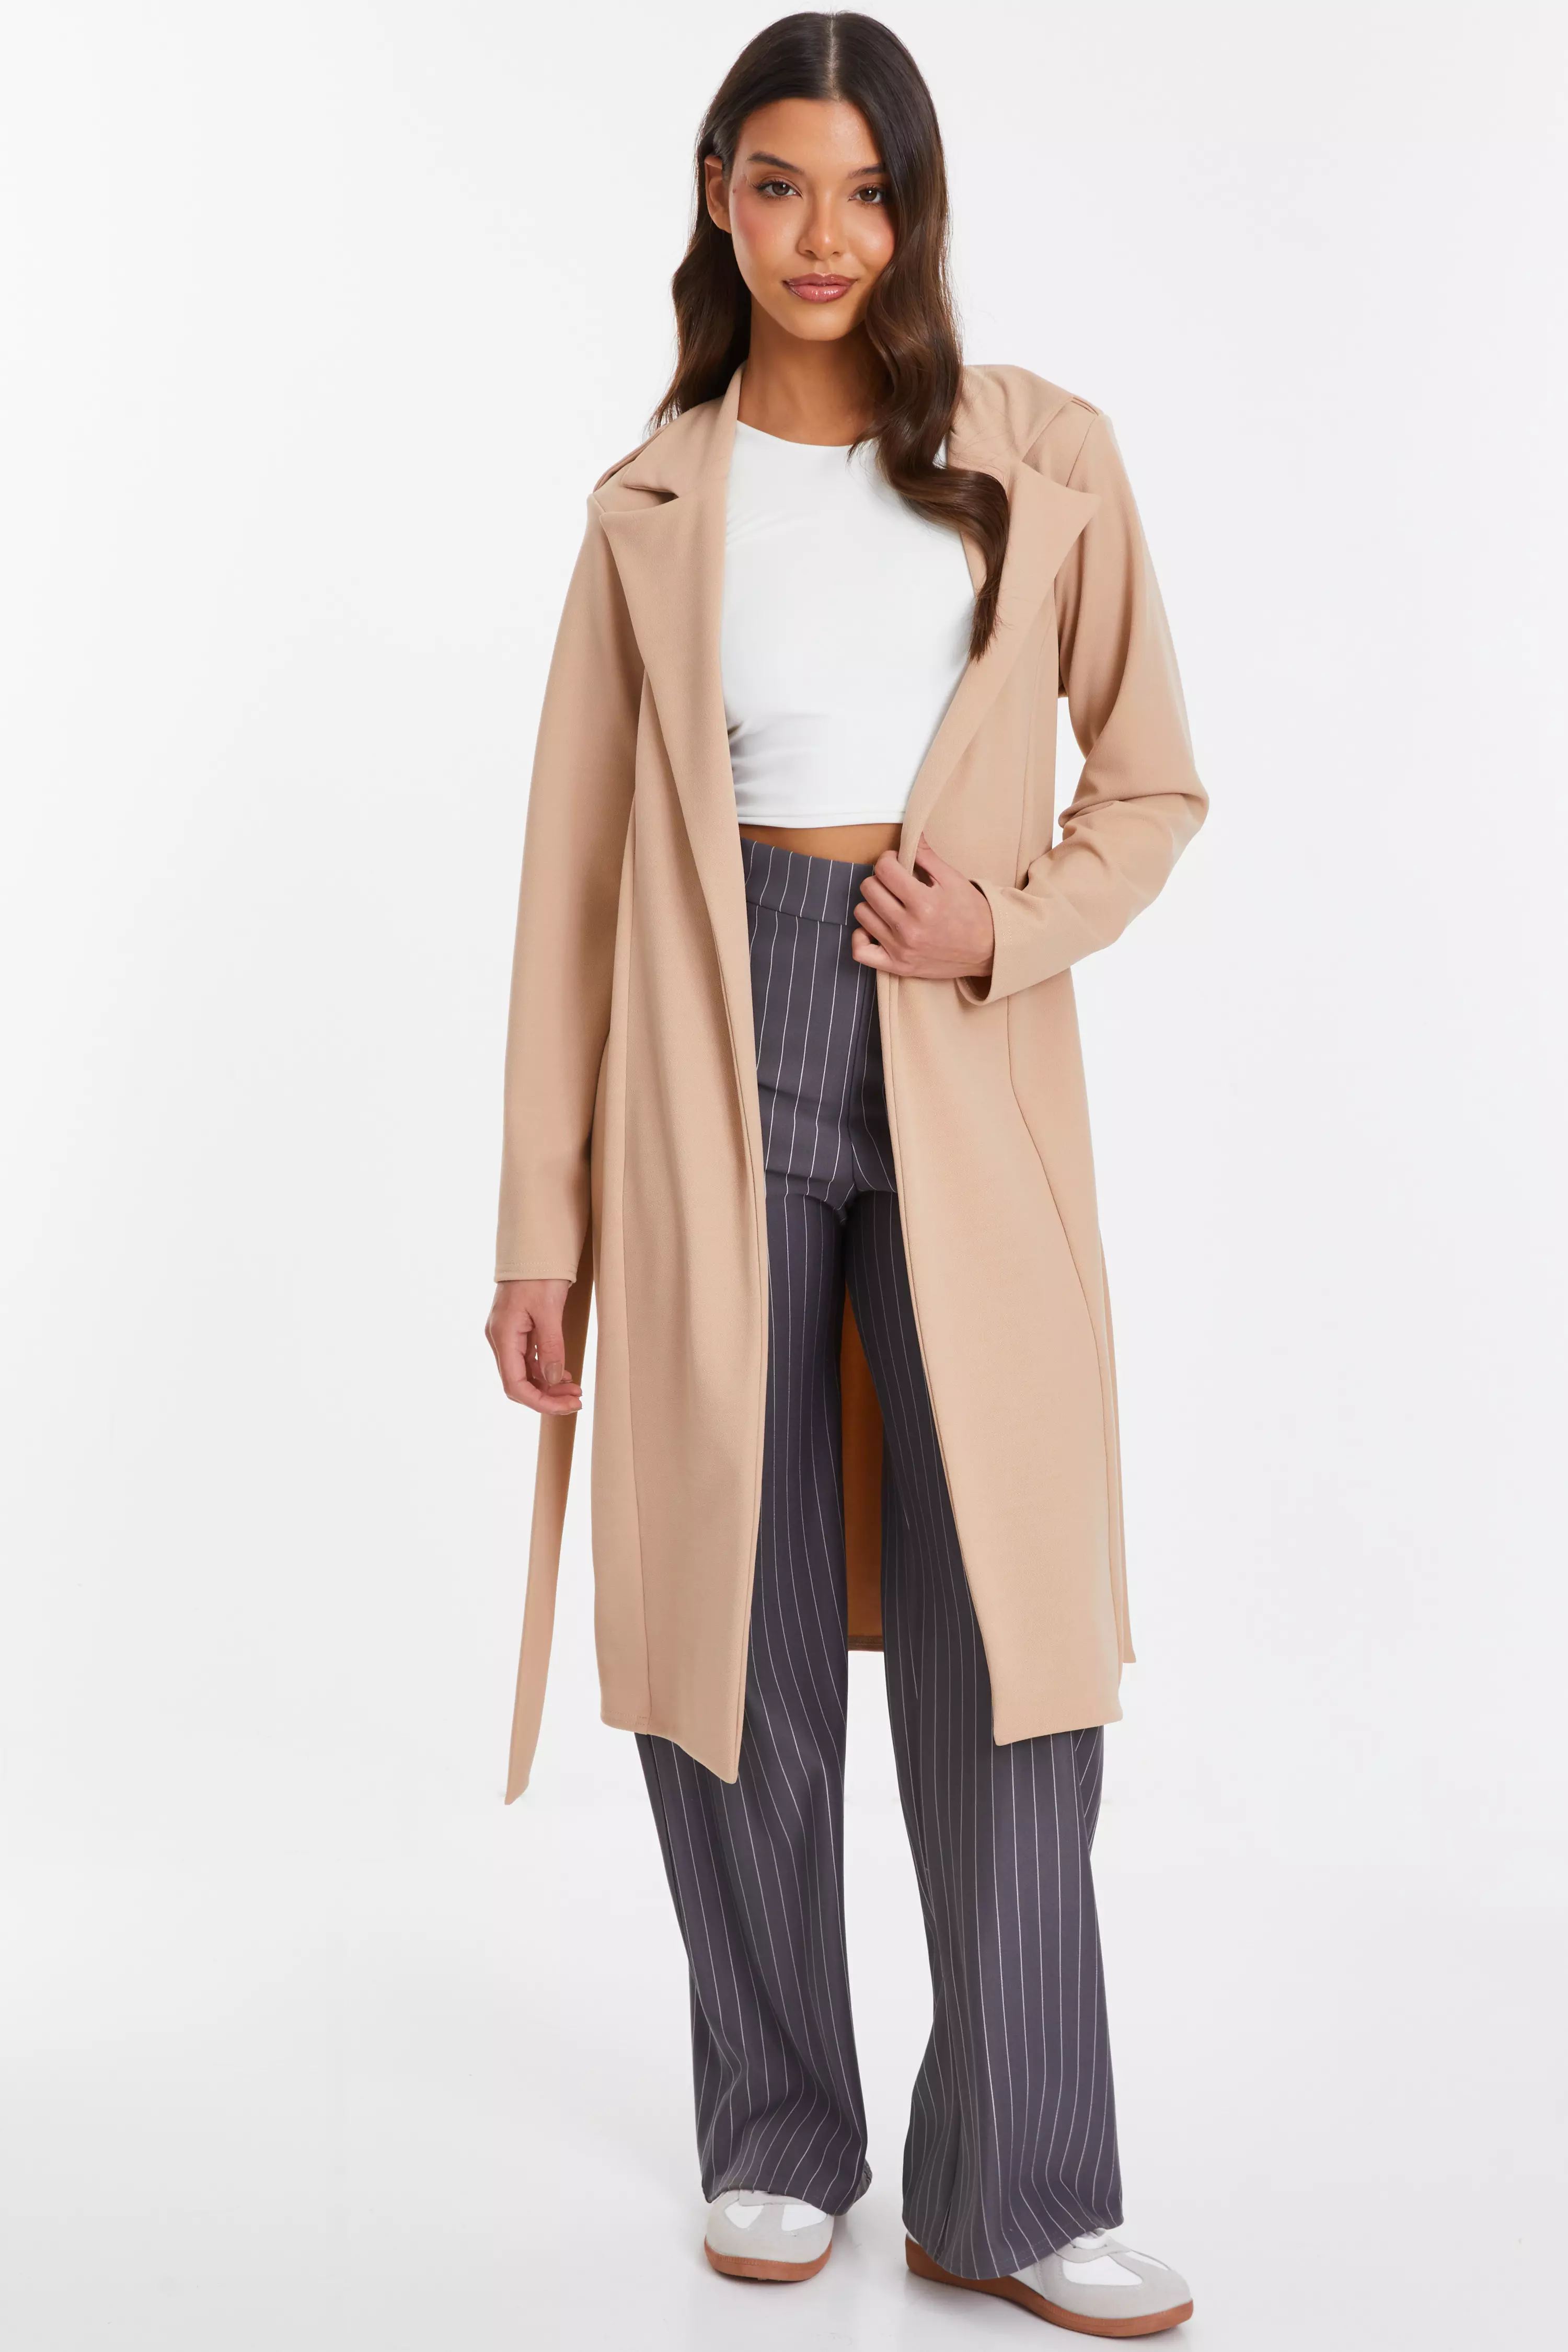 Coats | QUIZ Clothing